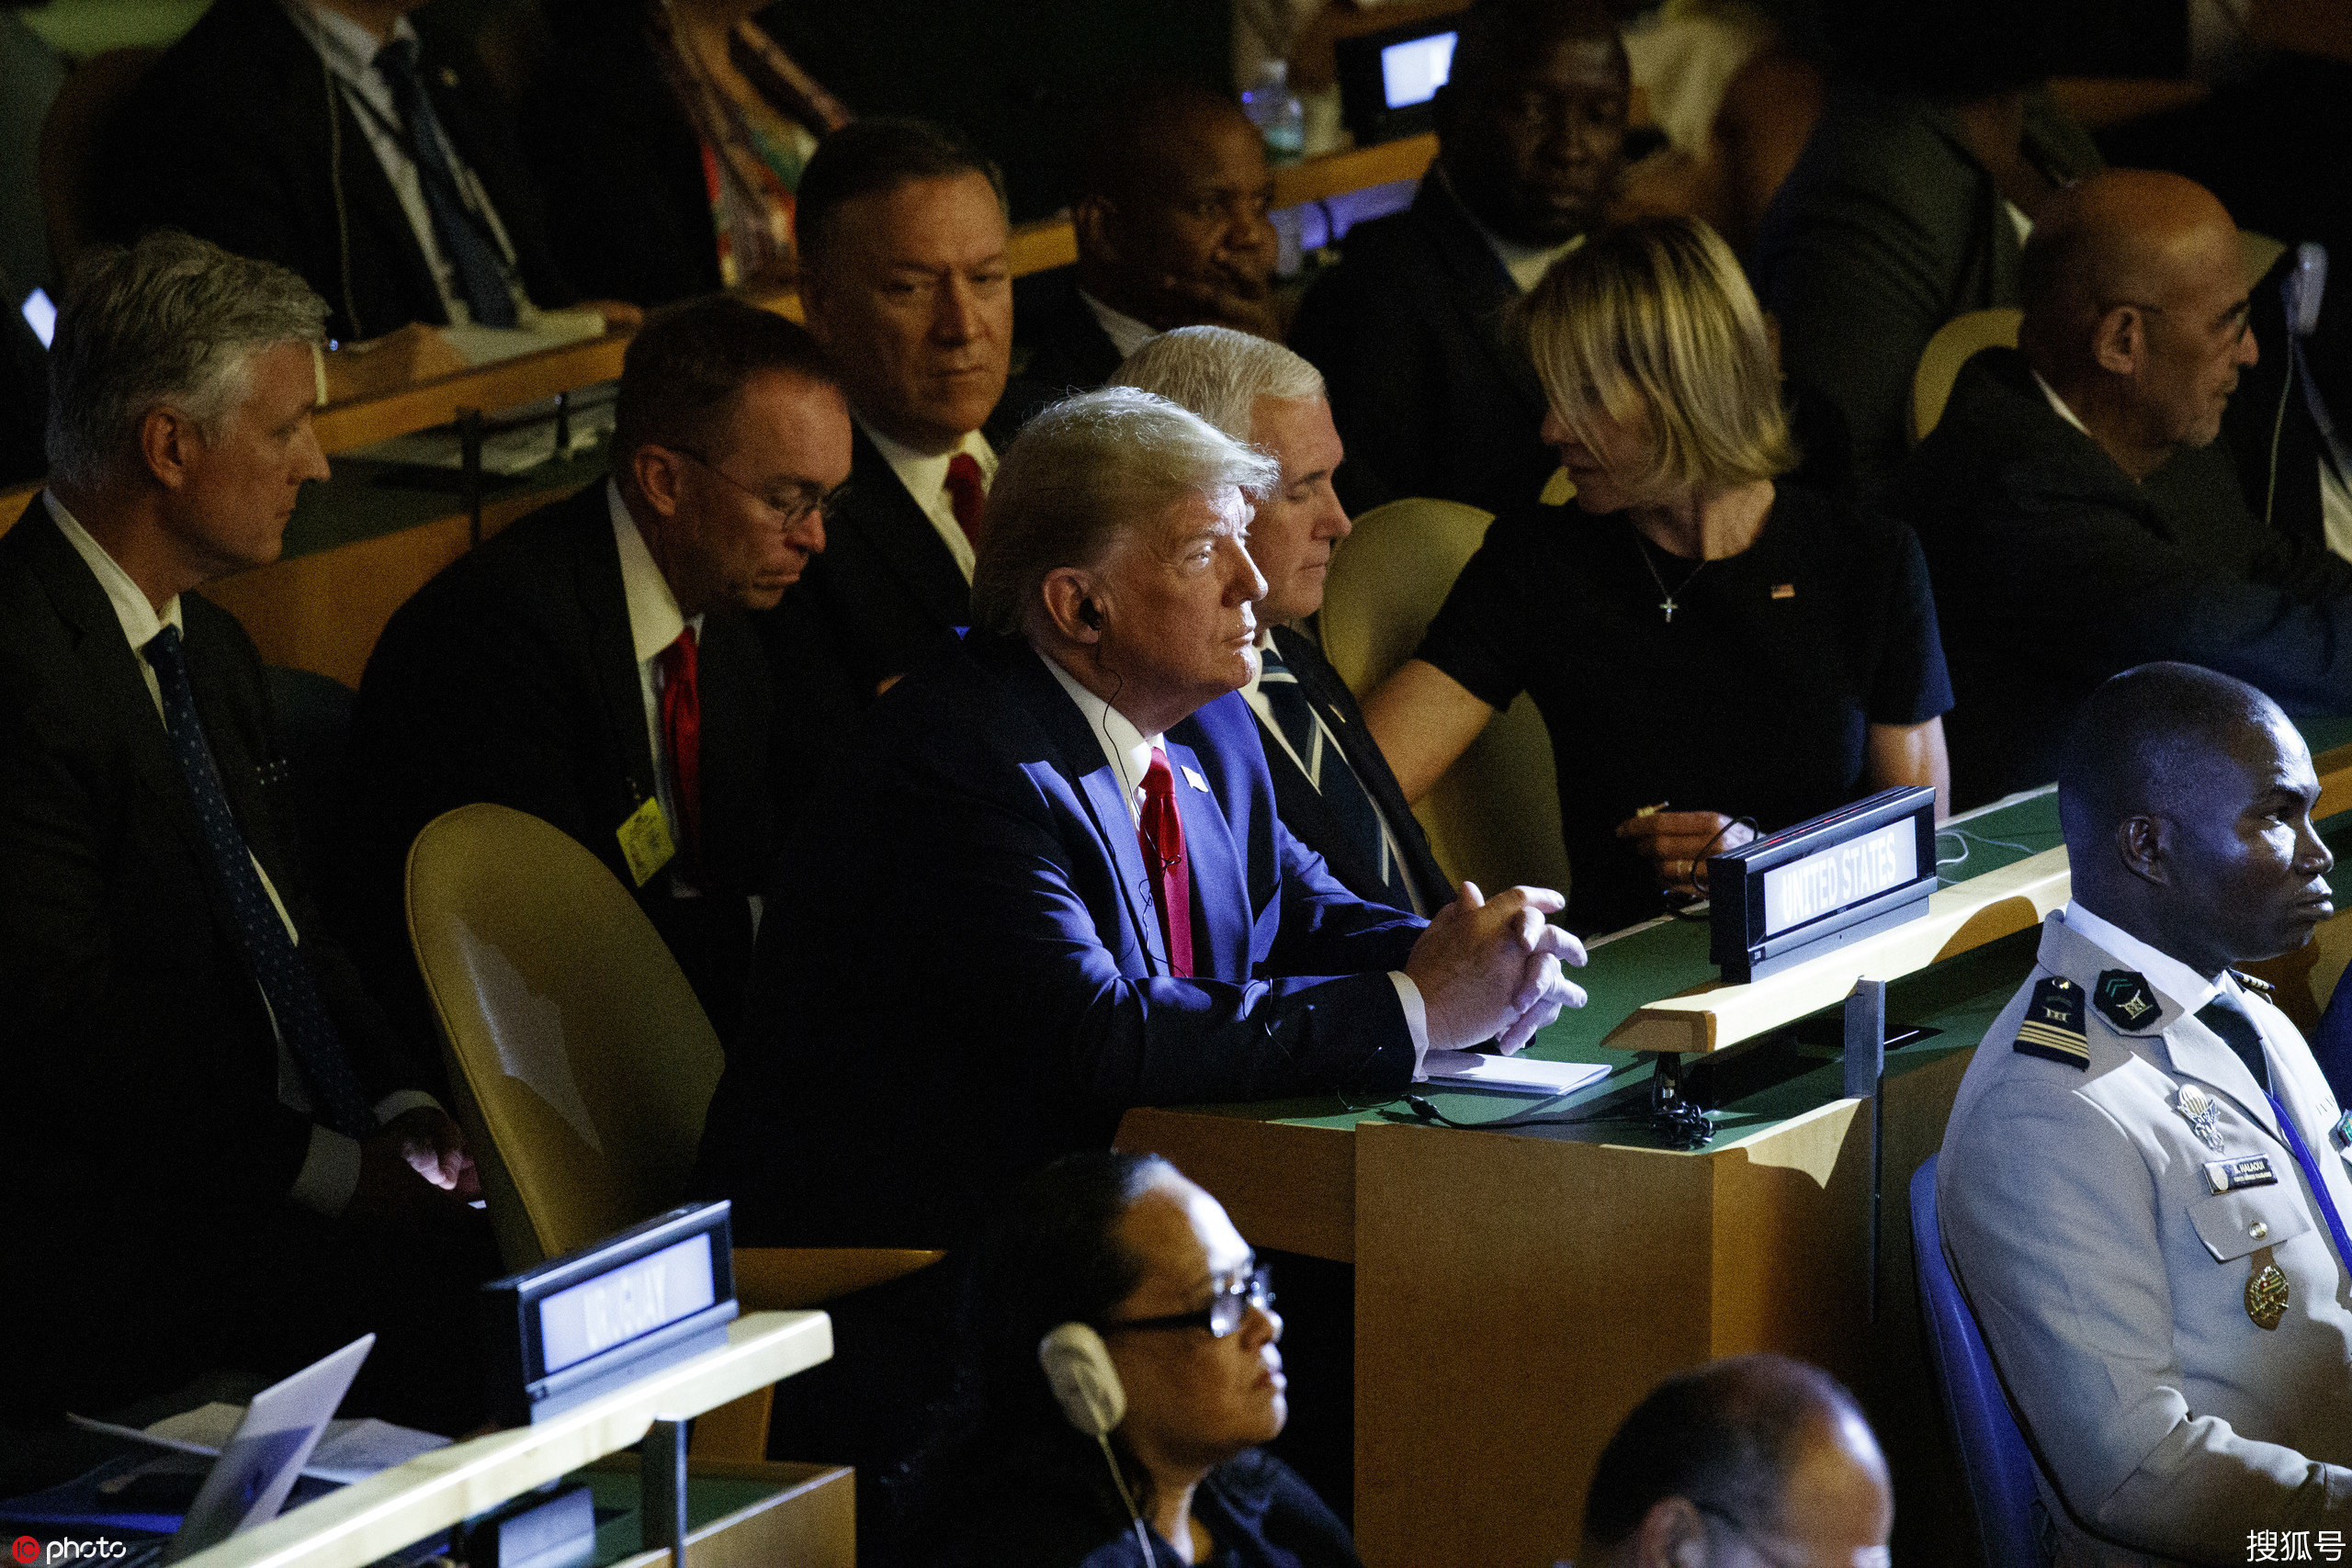 联合国气候行动峰会召开,原本预计将缺席的美国总统特朗普意外现身